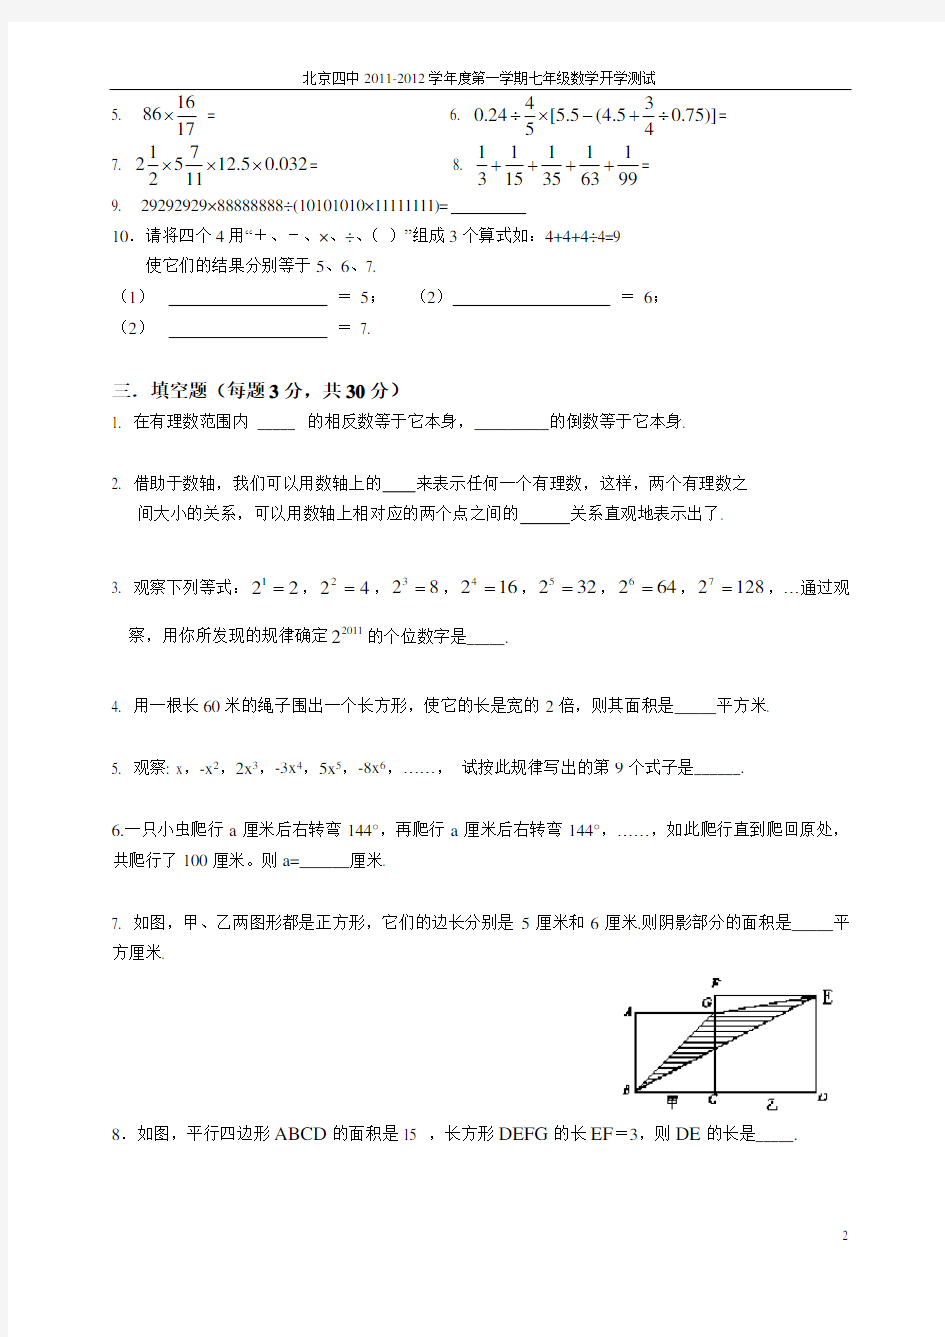 2012年北京四中新初一分班考试题